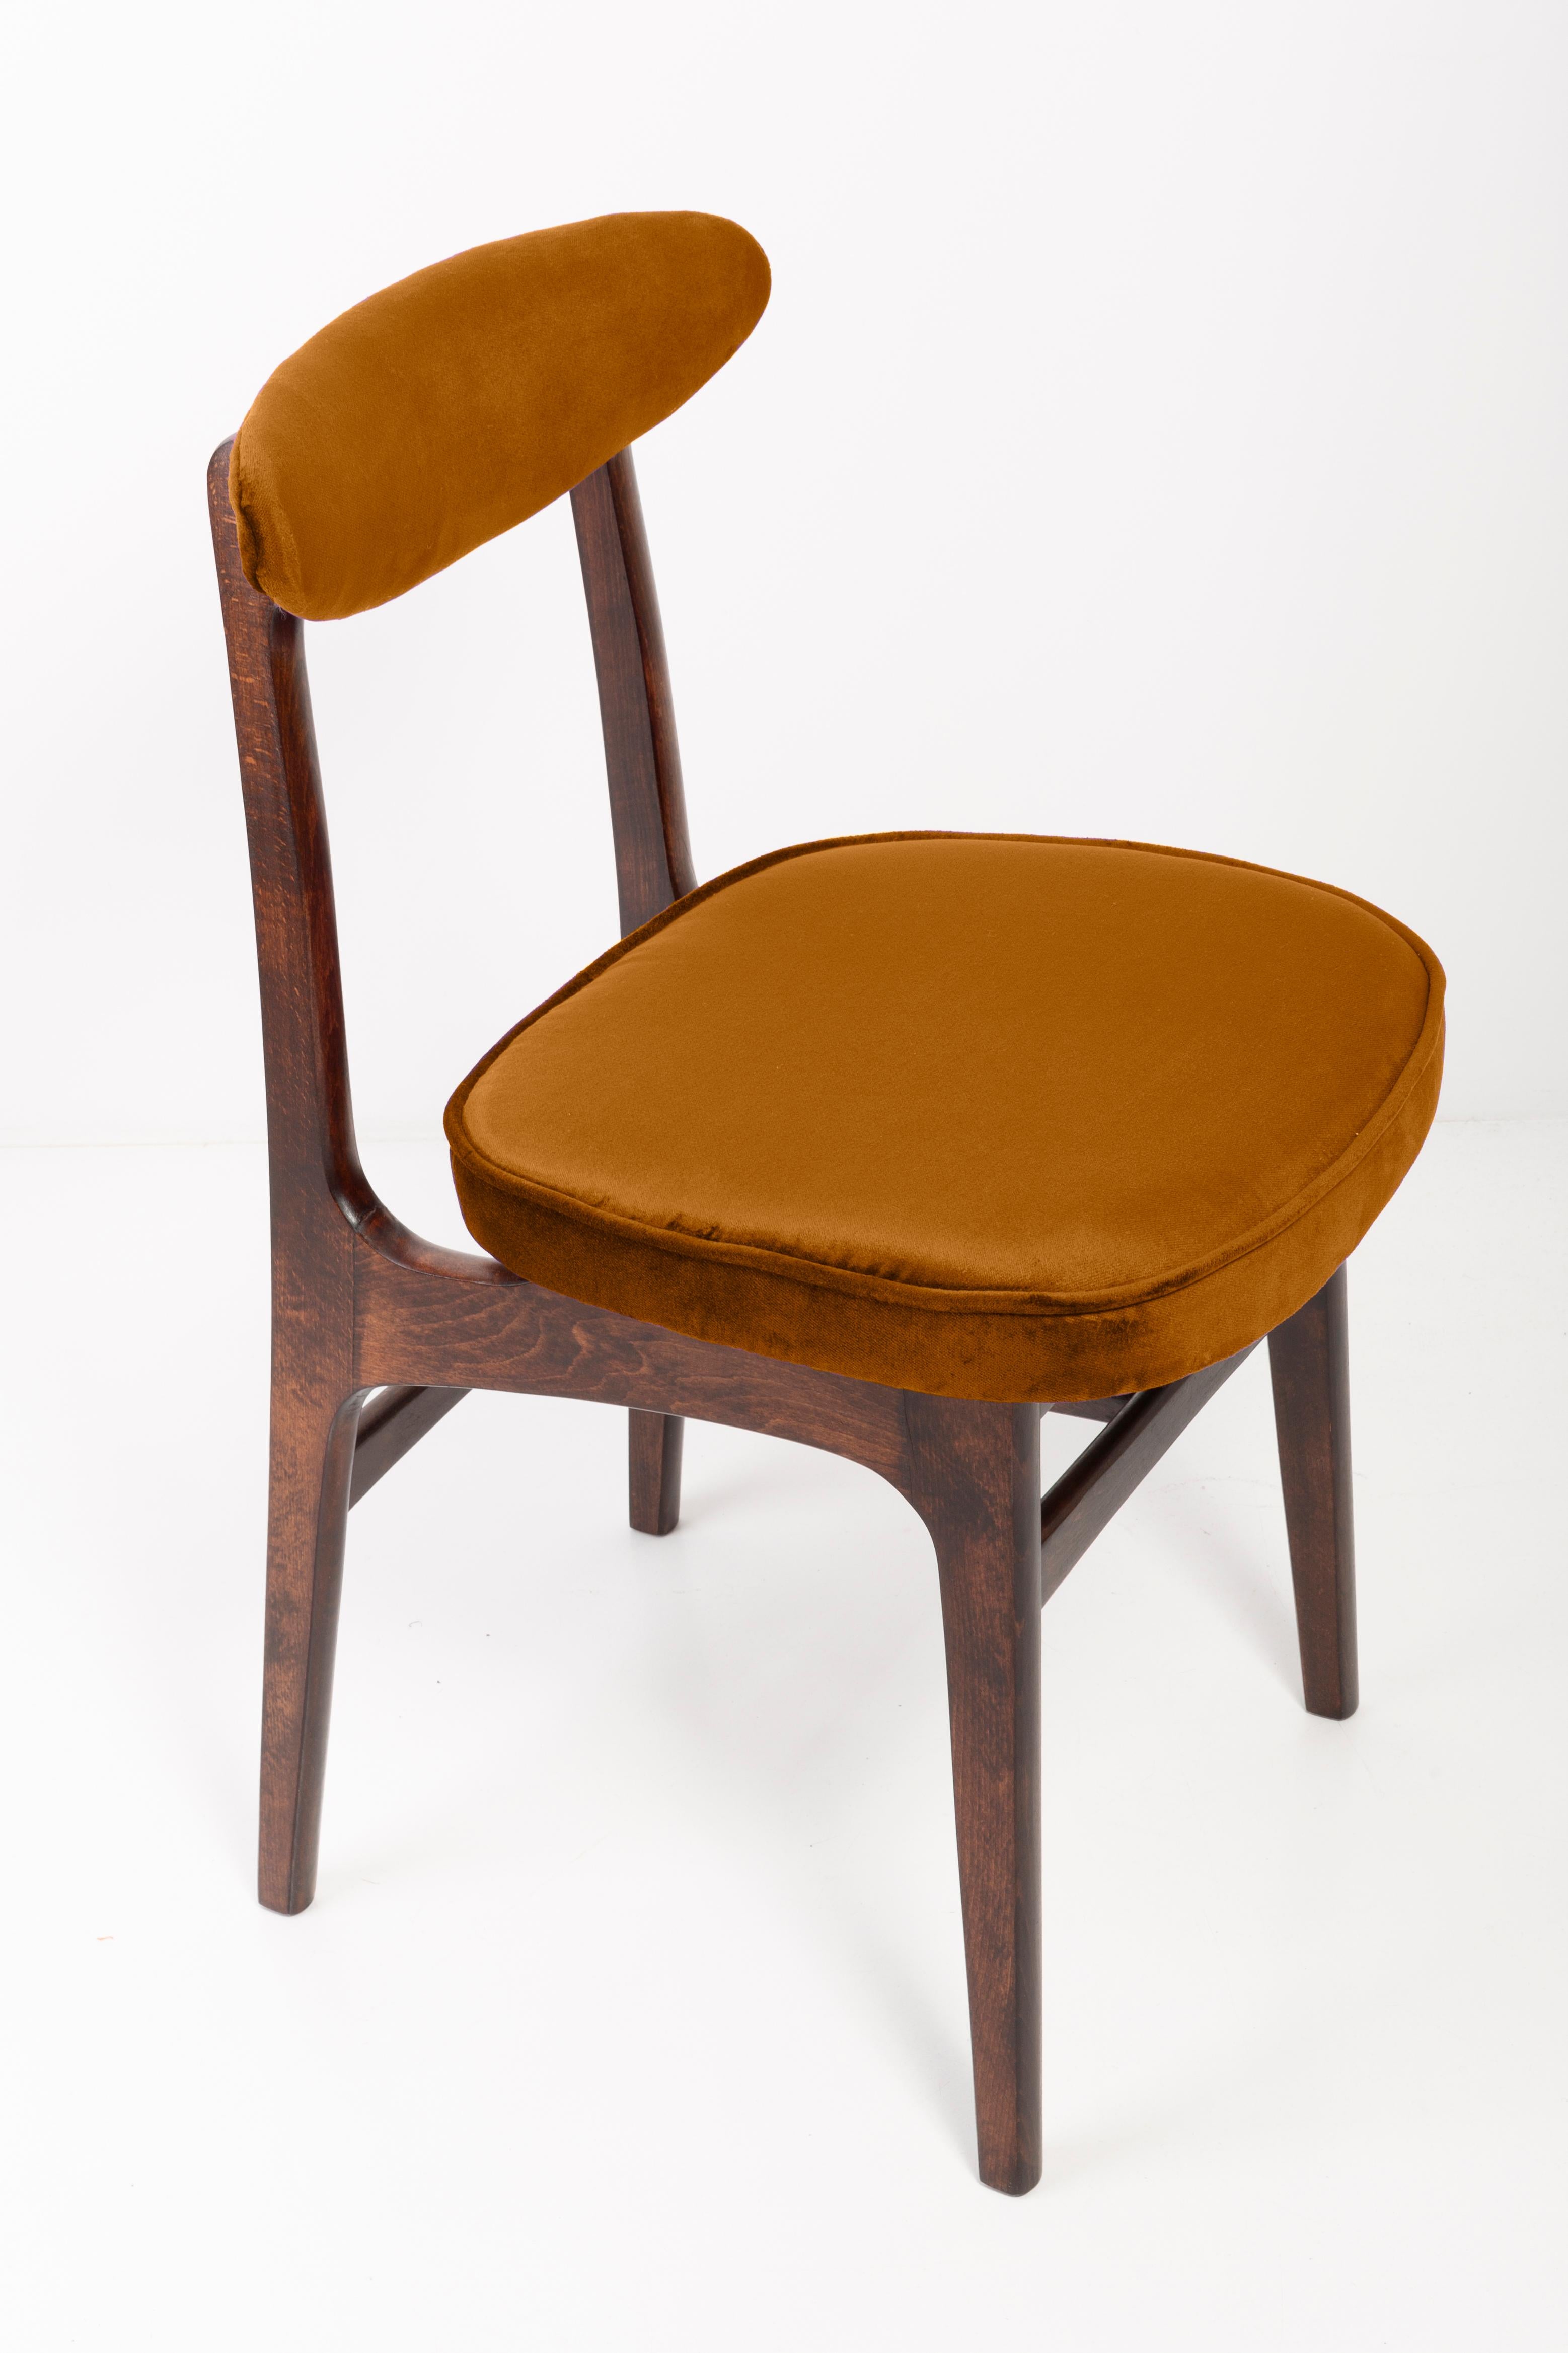 Belle chaise vintage de forme légère conçue par le professeur Rajmund Halas. Il a été fabriqué en bois de hêtre. Le fauteuil a subi une rénovation complète de la tapisserie et les boiseries ont été rafraîchies. Les sièges et les dossiers ont été